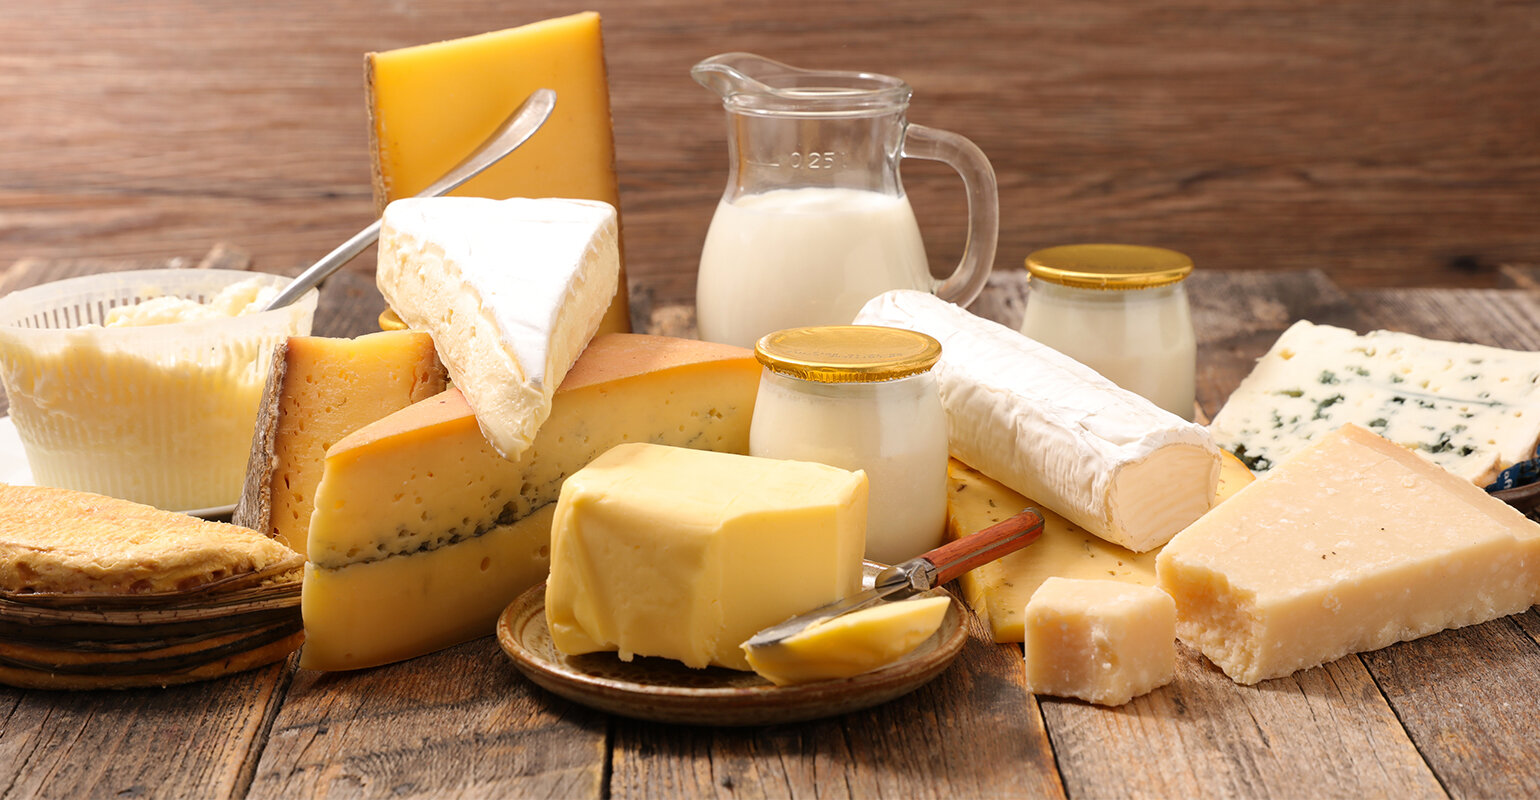 Sữa, phomai và các sản phẩm từ sữa chứa nhiều vitamin B12